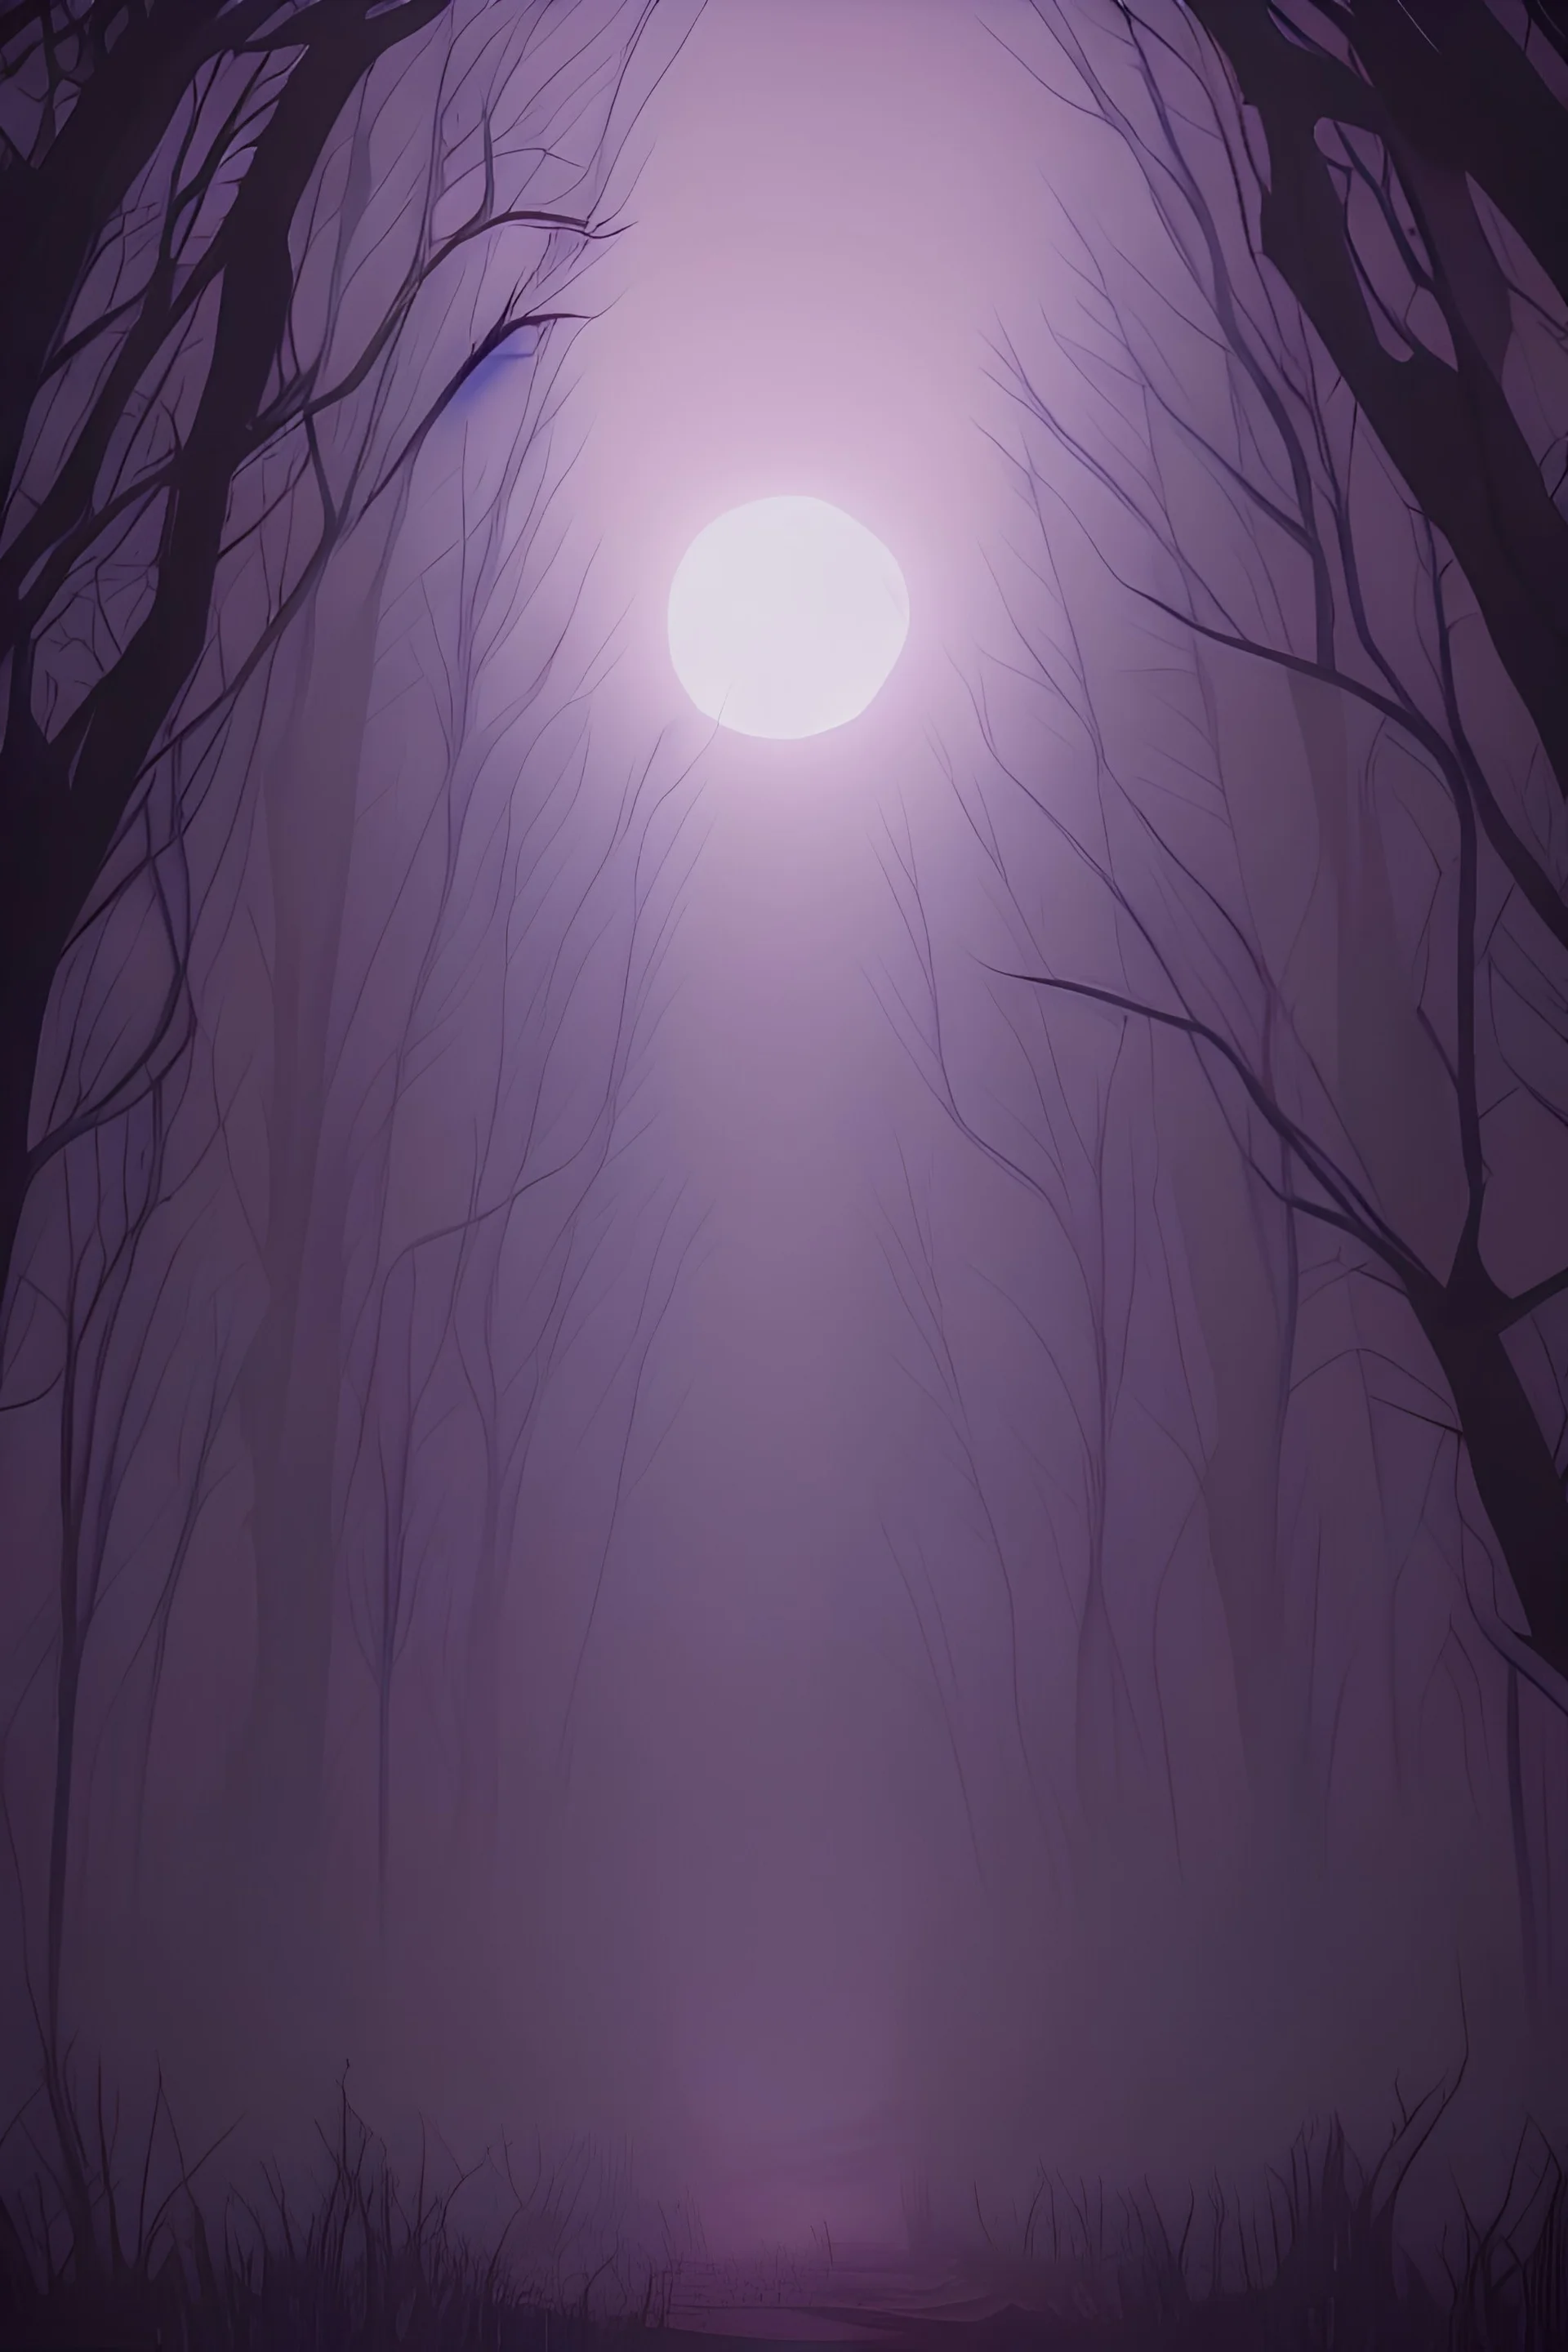 صورة مرعبة لغابة مليئة بالأشجار بها وحوش مقطوعة الرؤوس والقمر في السماء، لون بنفسجي